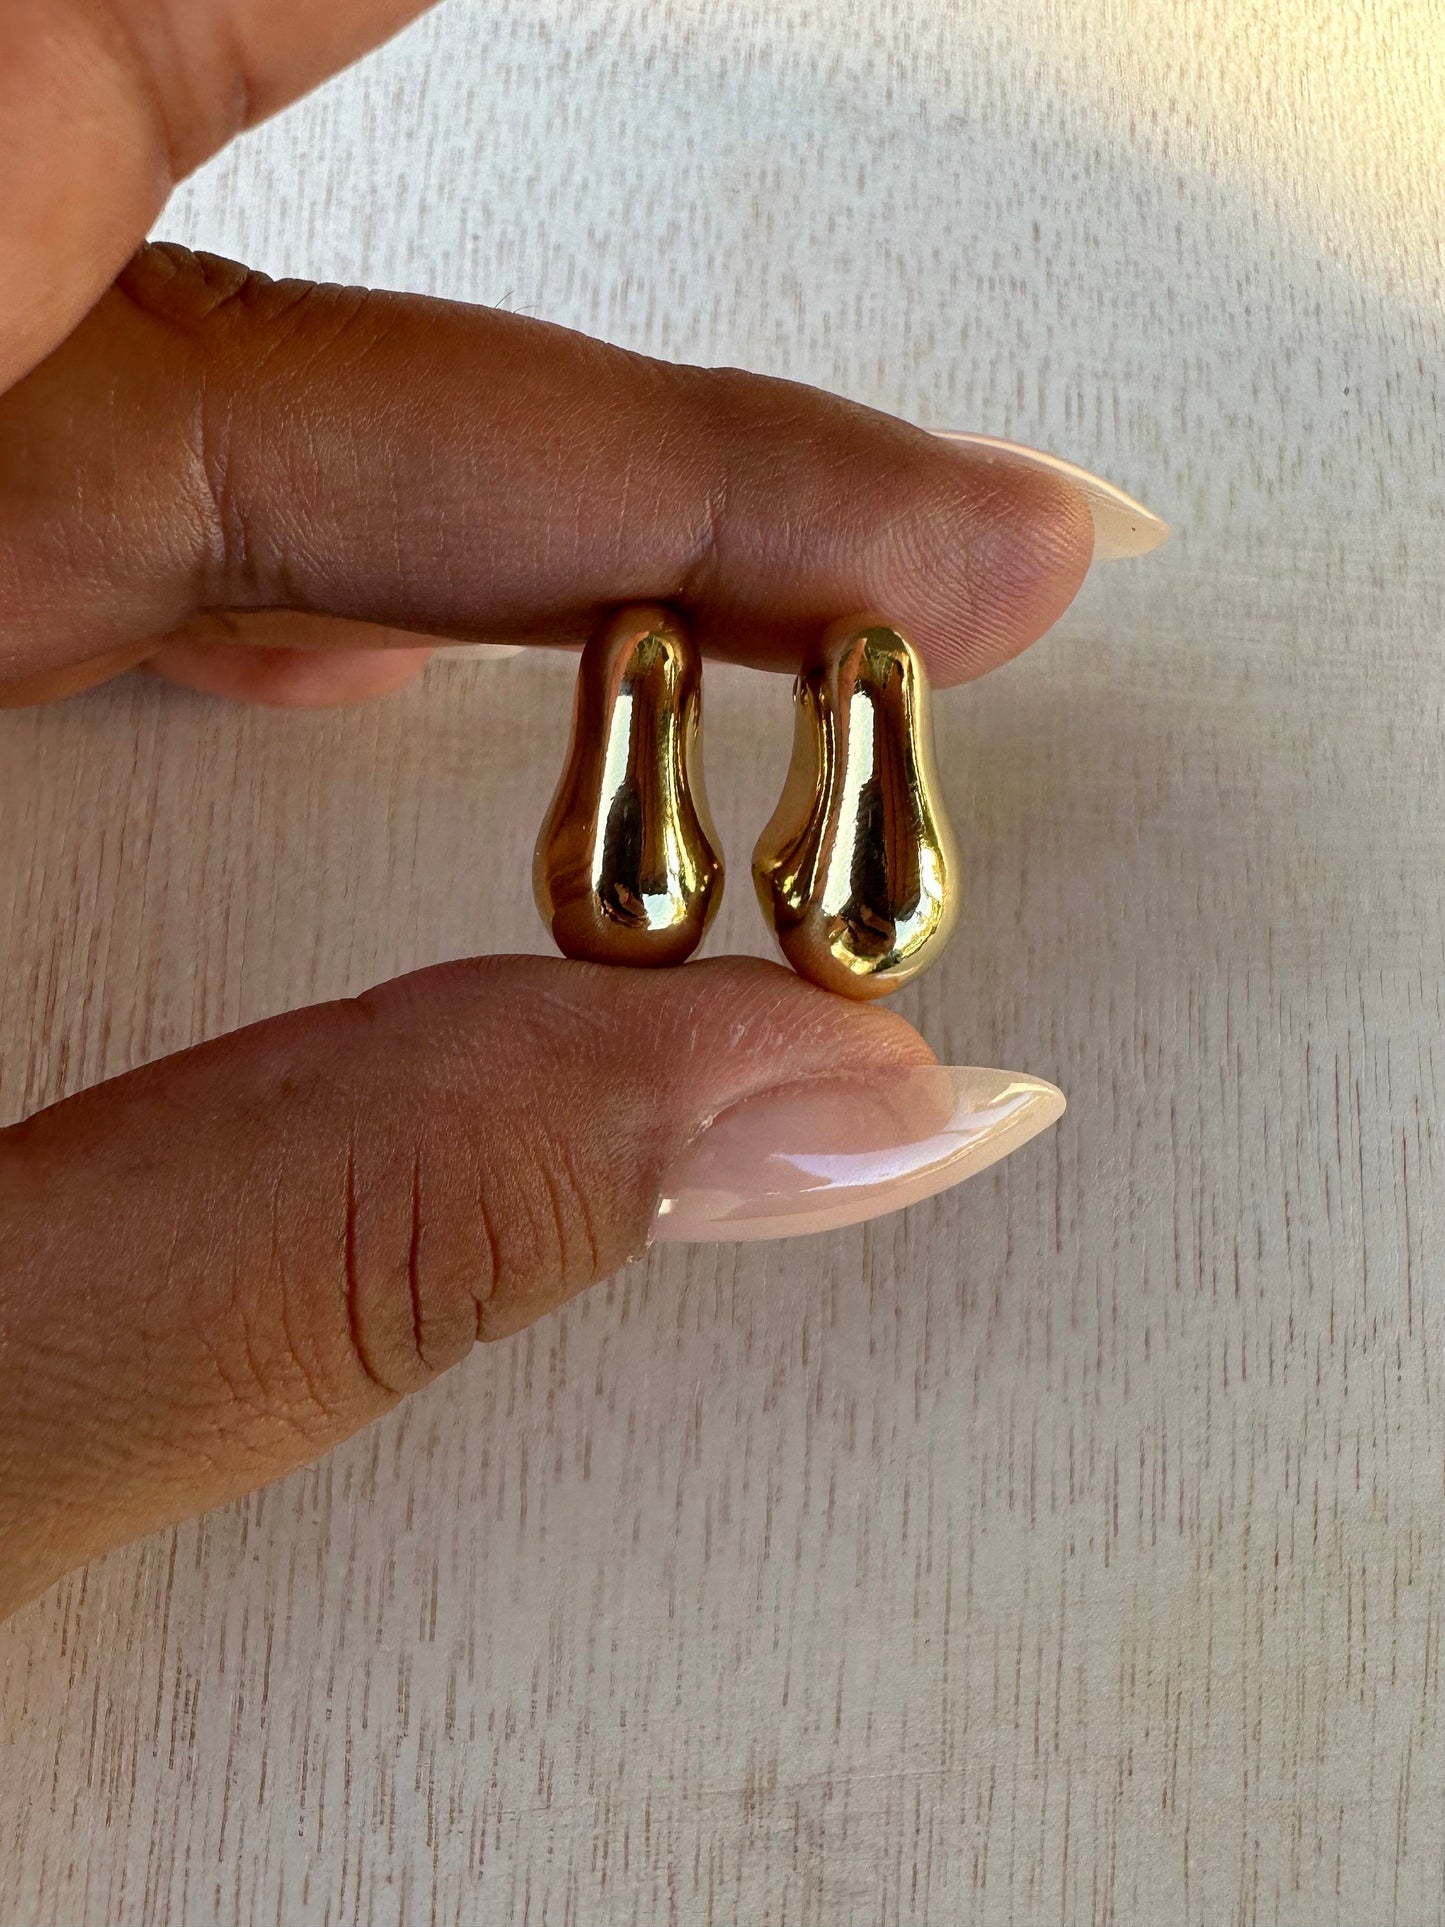 Asymmetrical earrings, gold filled stud earrings, gold filled asymmetrical earrings, chunky earrings, statement earrings